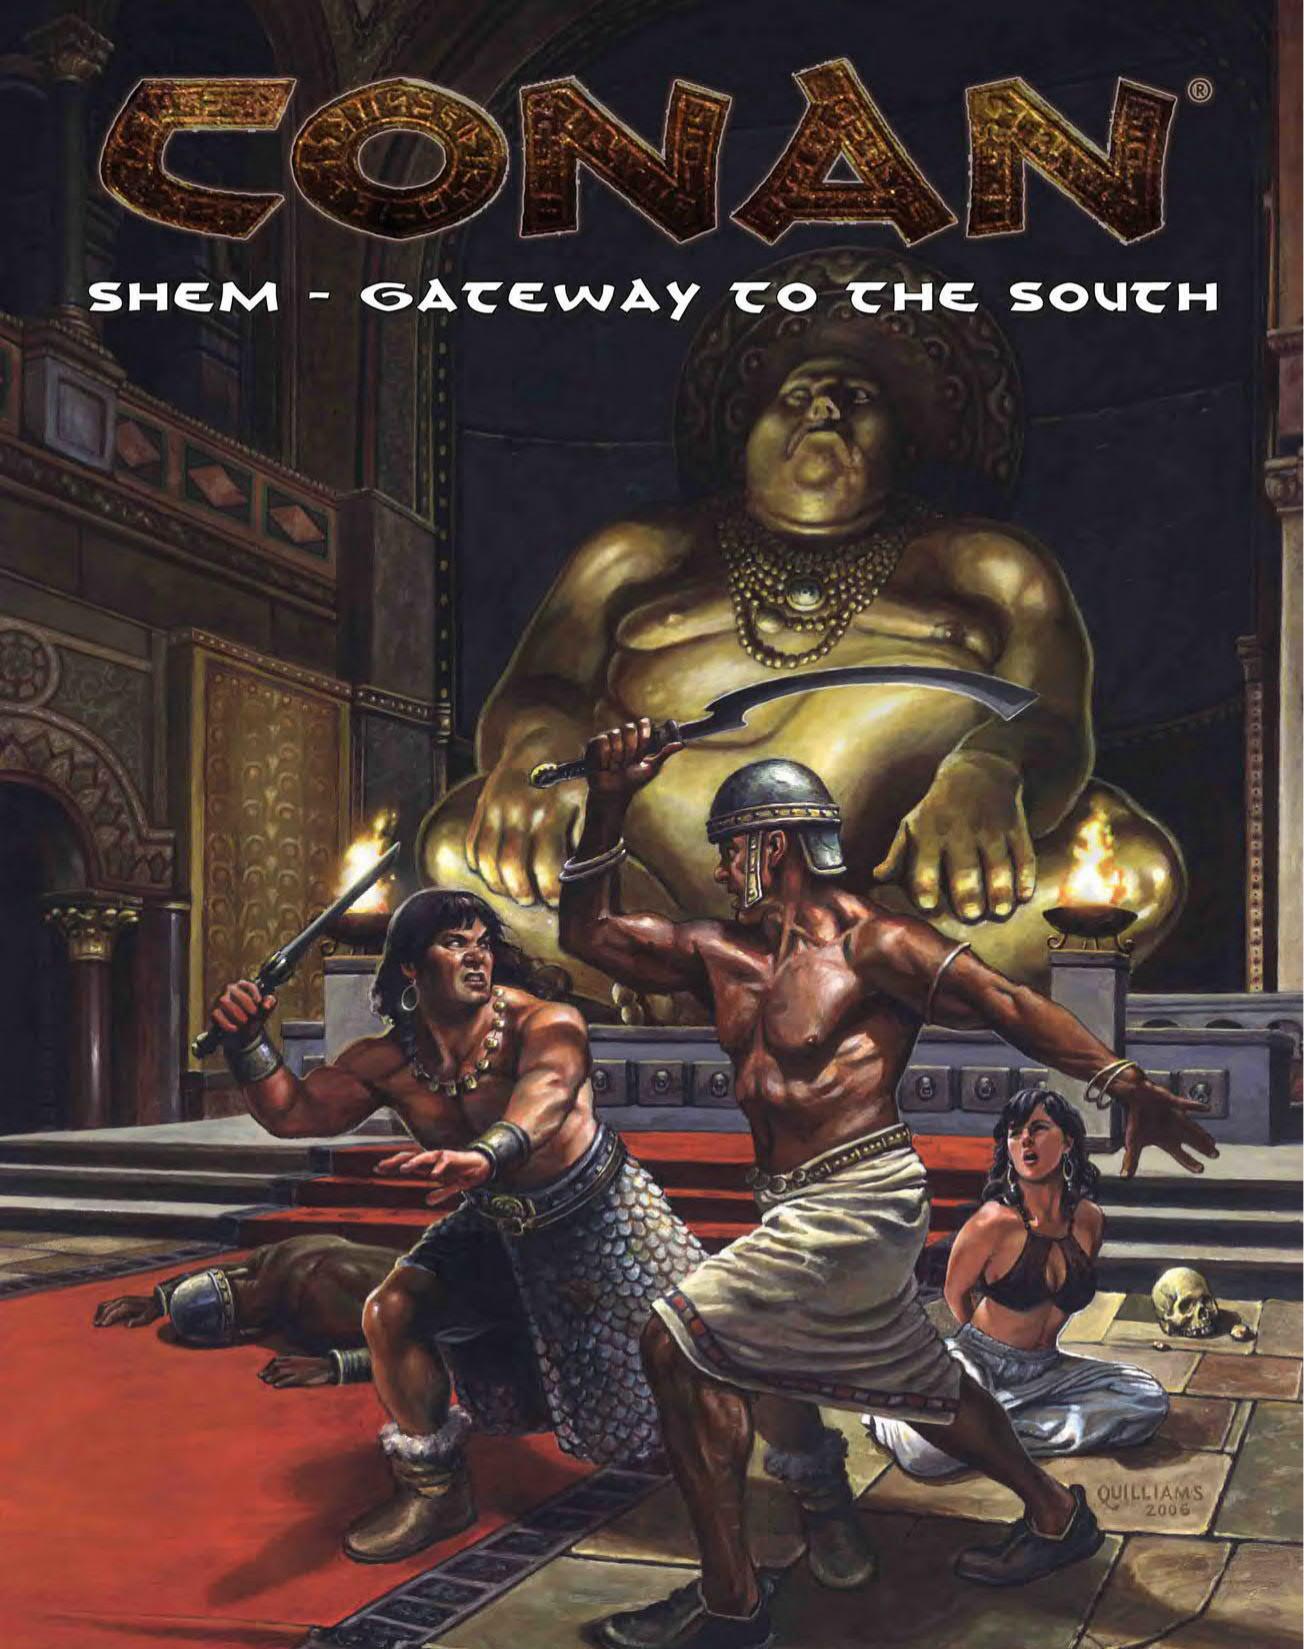 Conan D20 1e Shem Gateway To the South